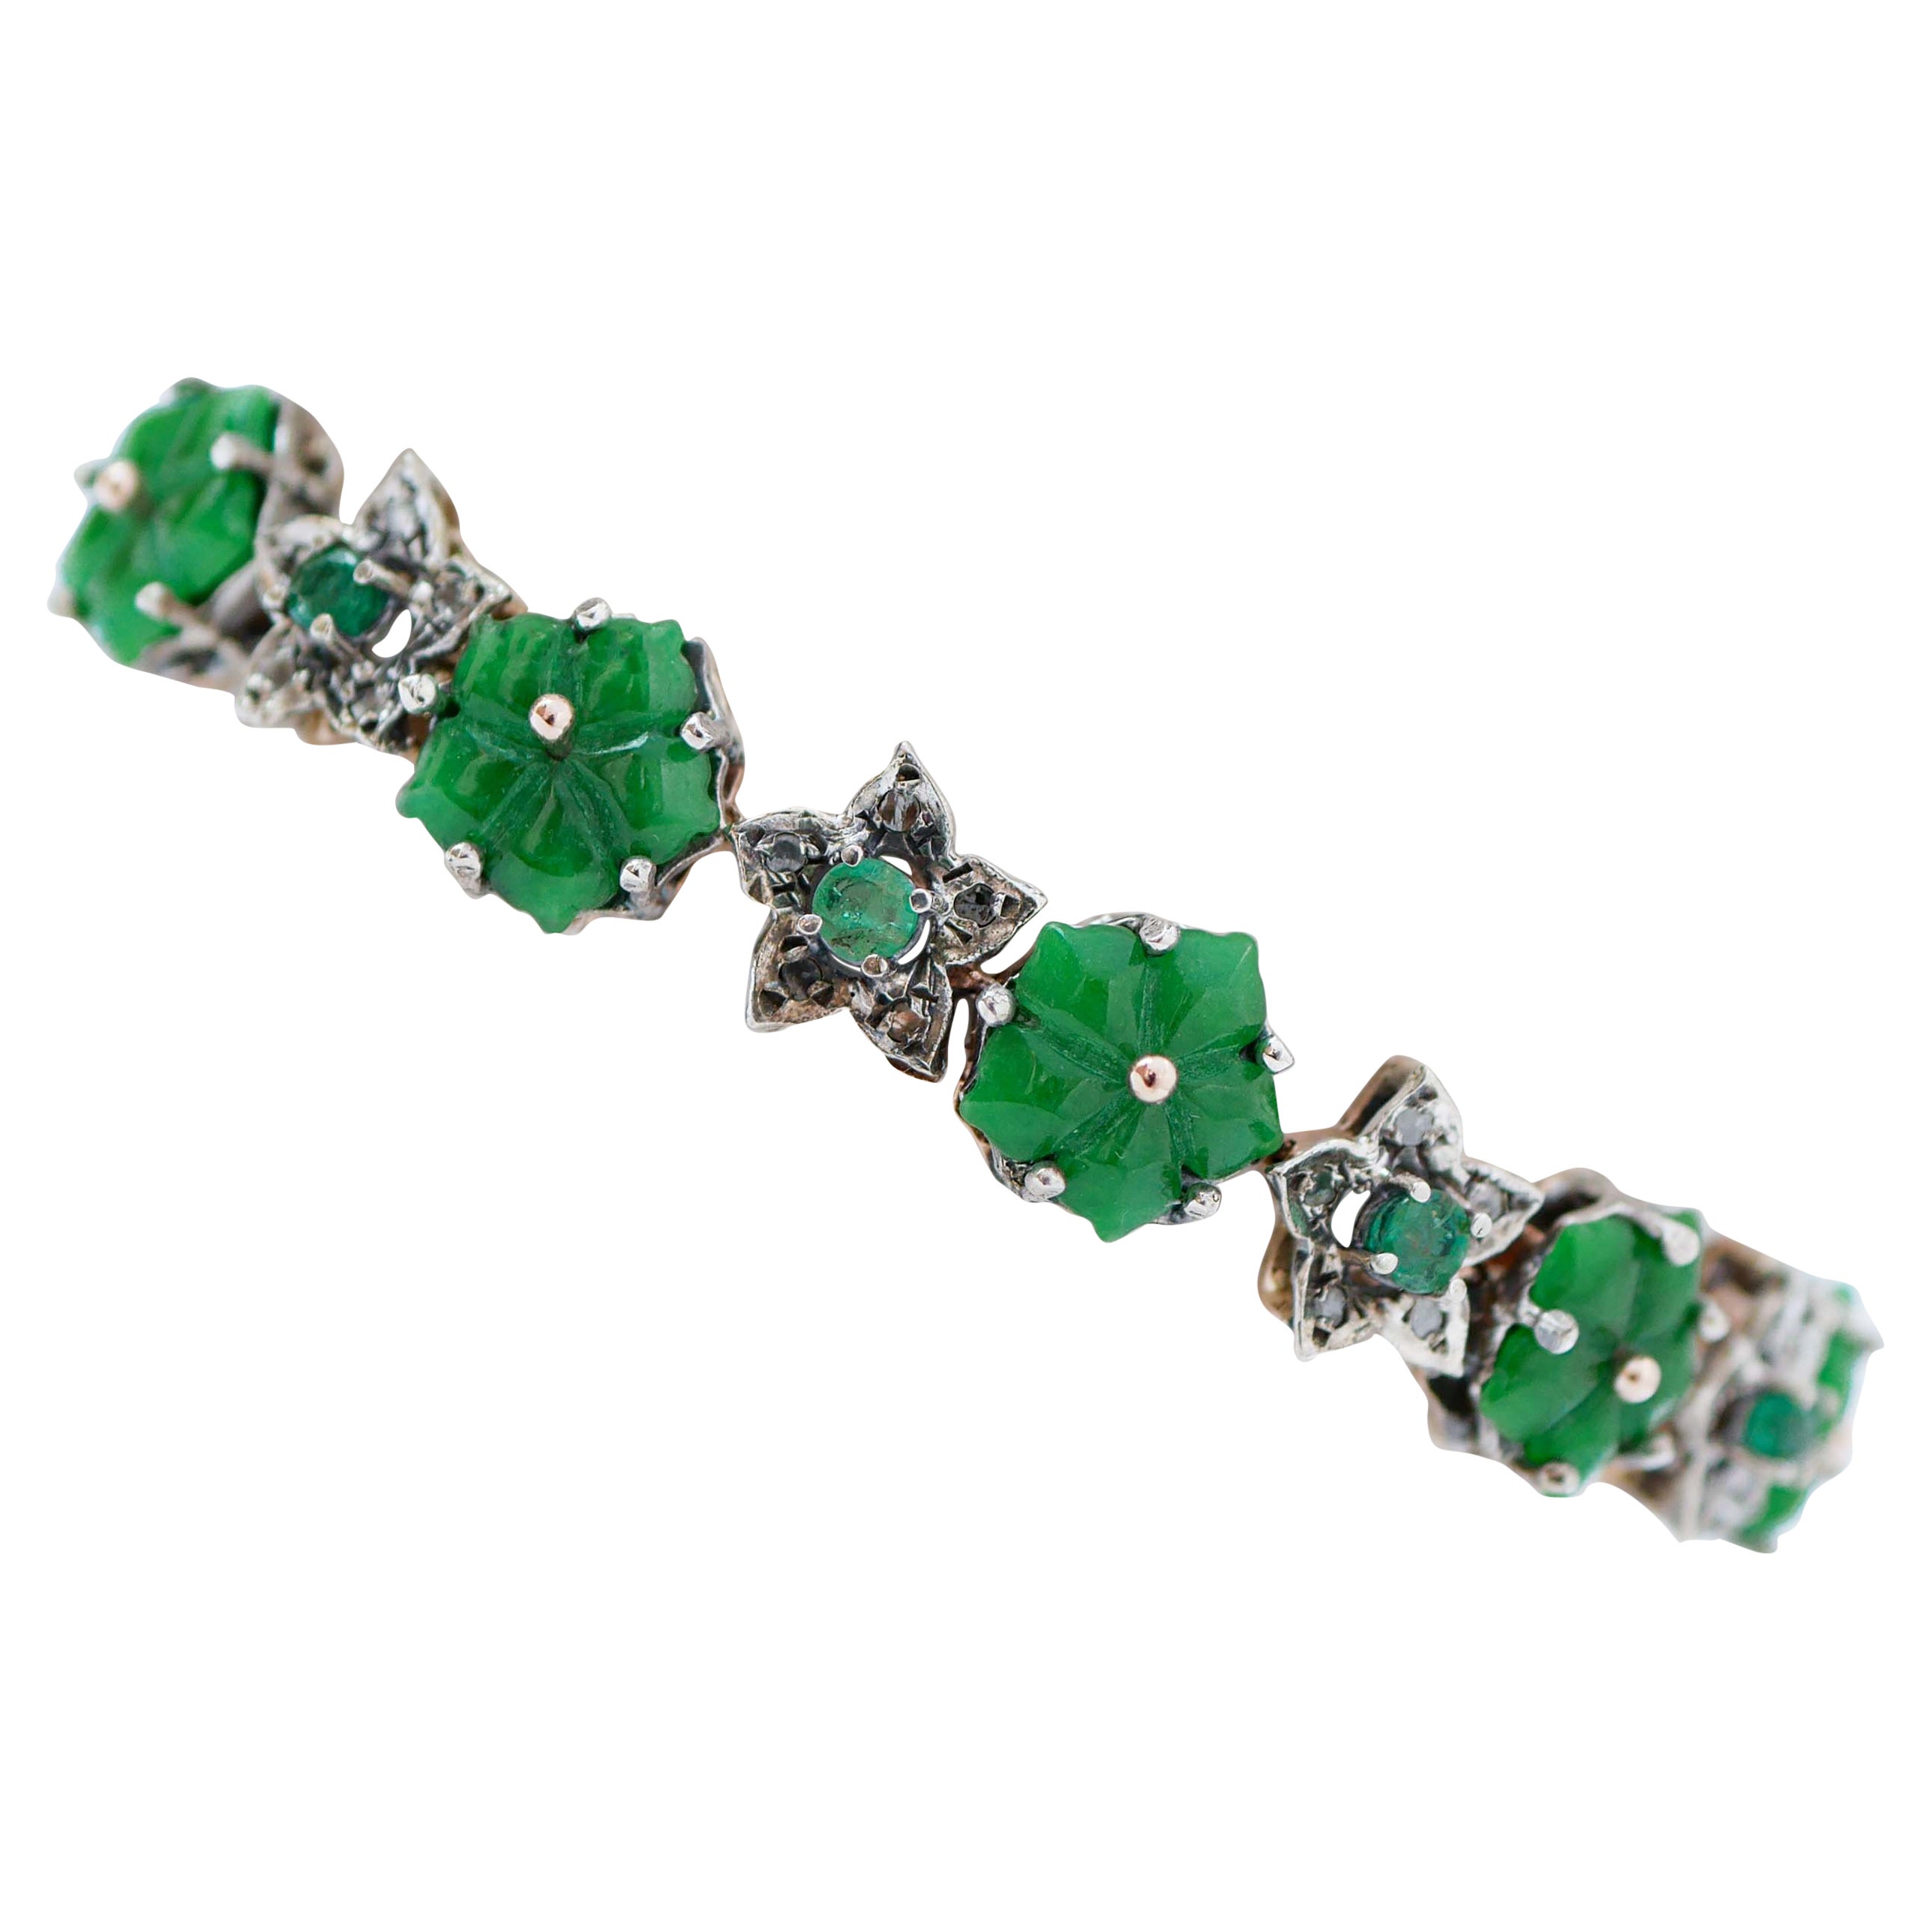 Armband aus Roségold und Silber mit Blumen aus grünem Achat, Smaragden, Diamanten und Silber.